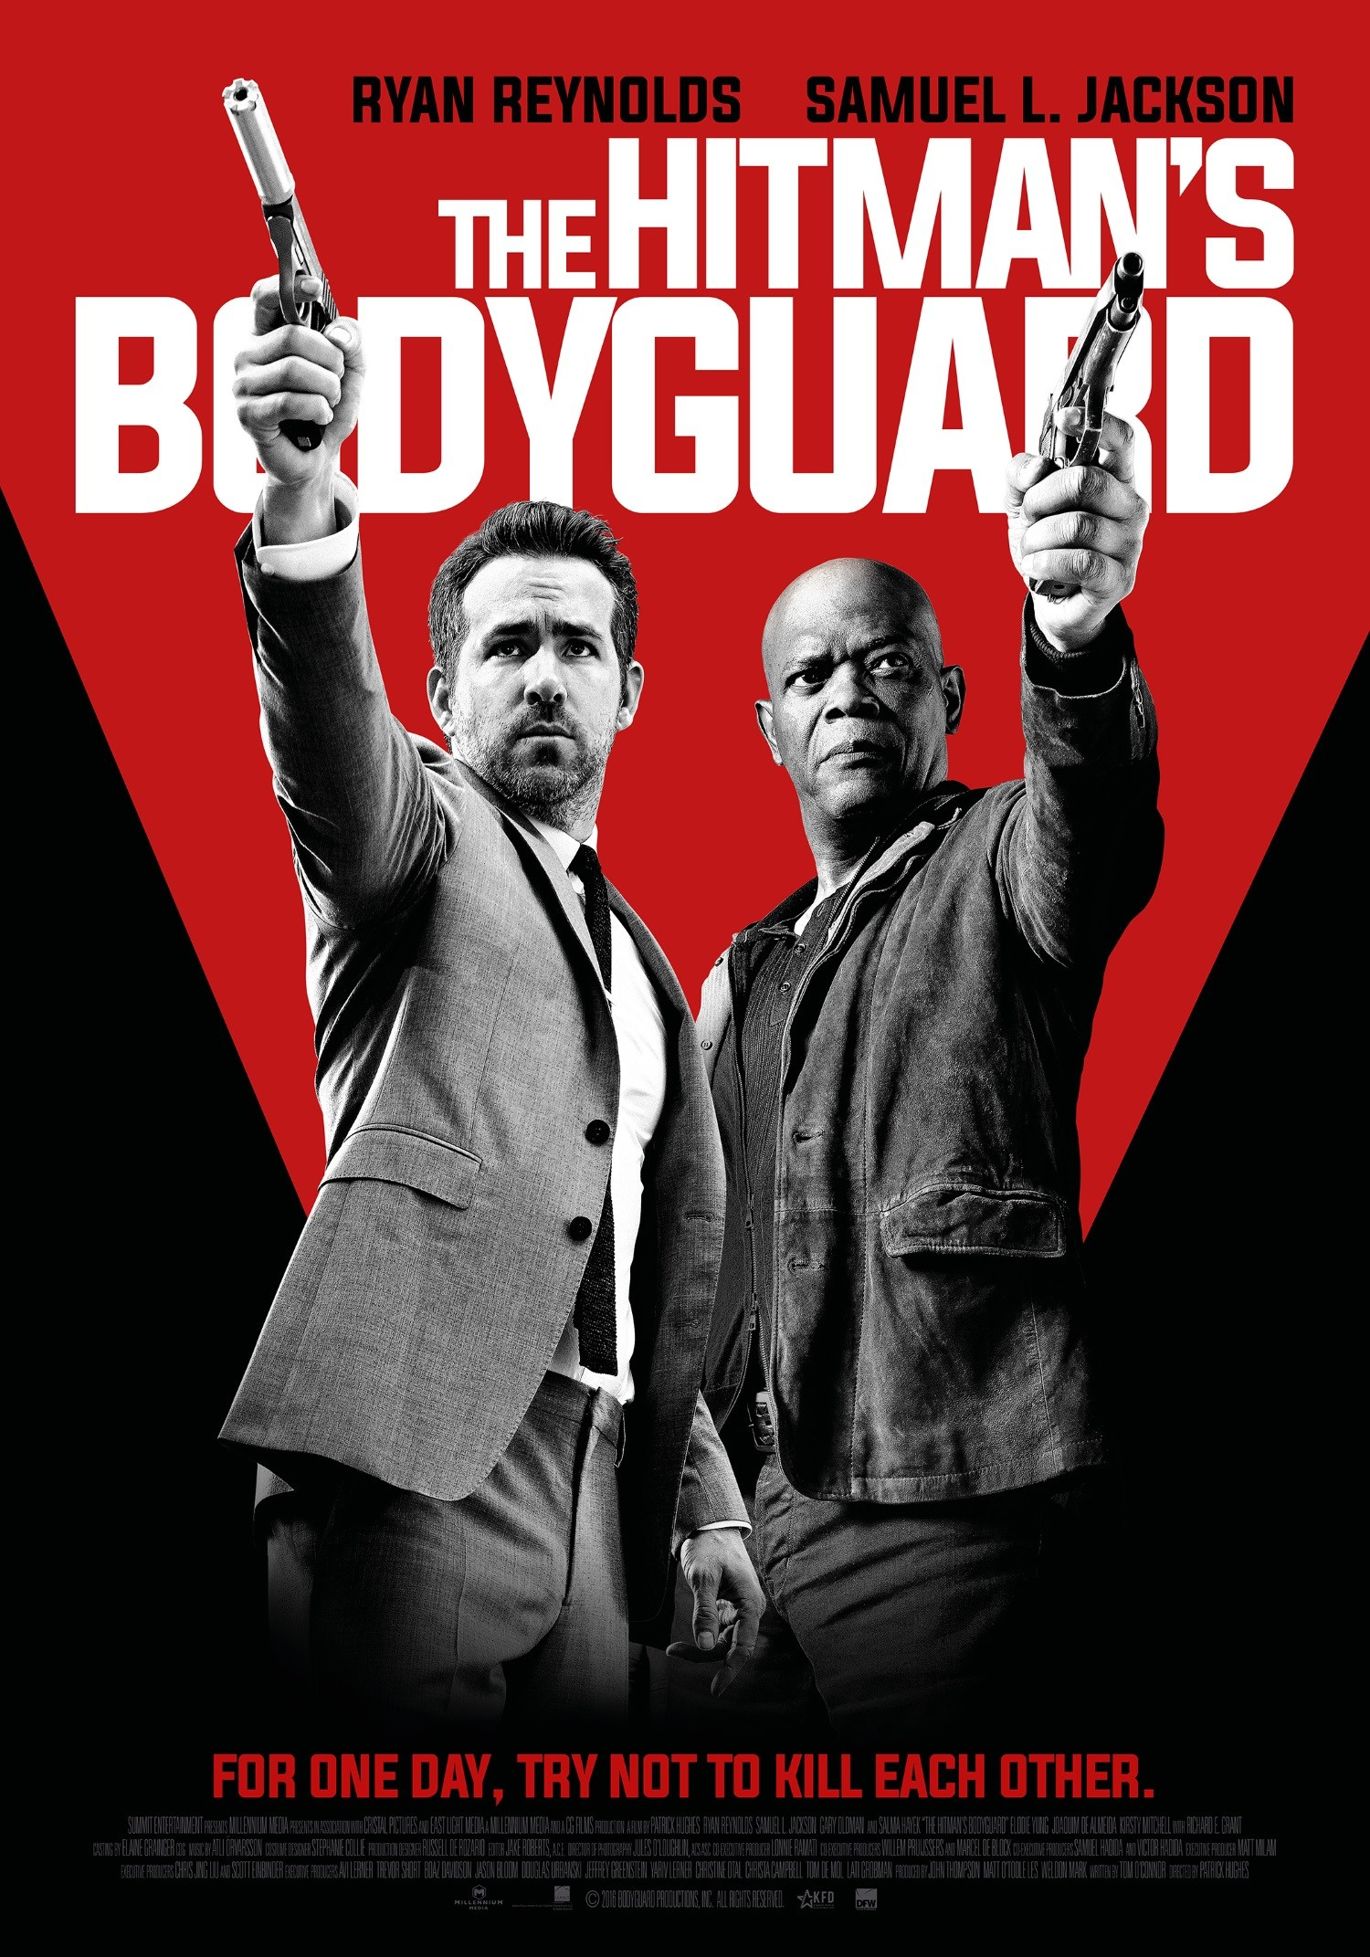 心得 暑假尾聲的絢麗狂想 殺手保鑣 The Hitman S Bodyguard 電影娛樂新視界哈啦板 巴哈姆特